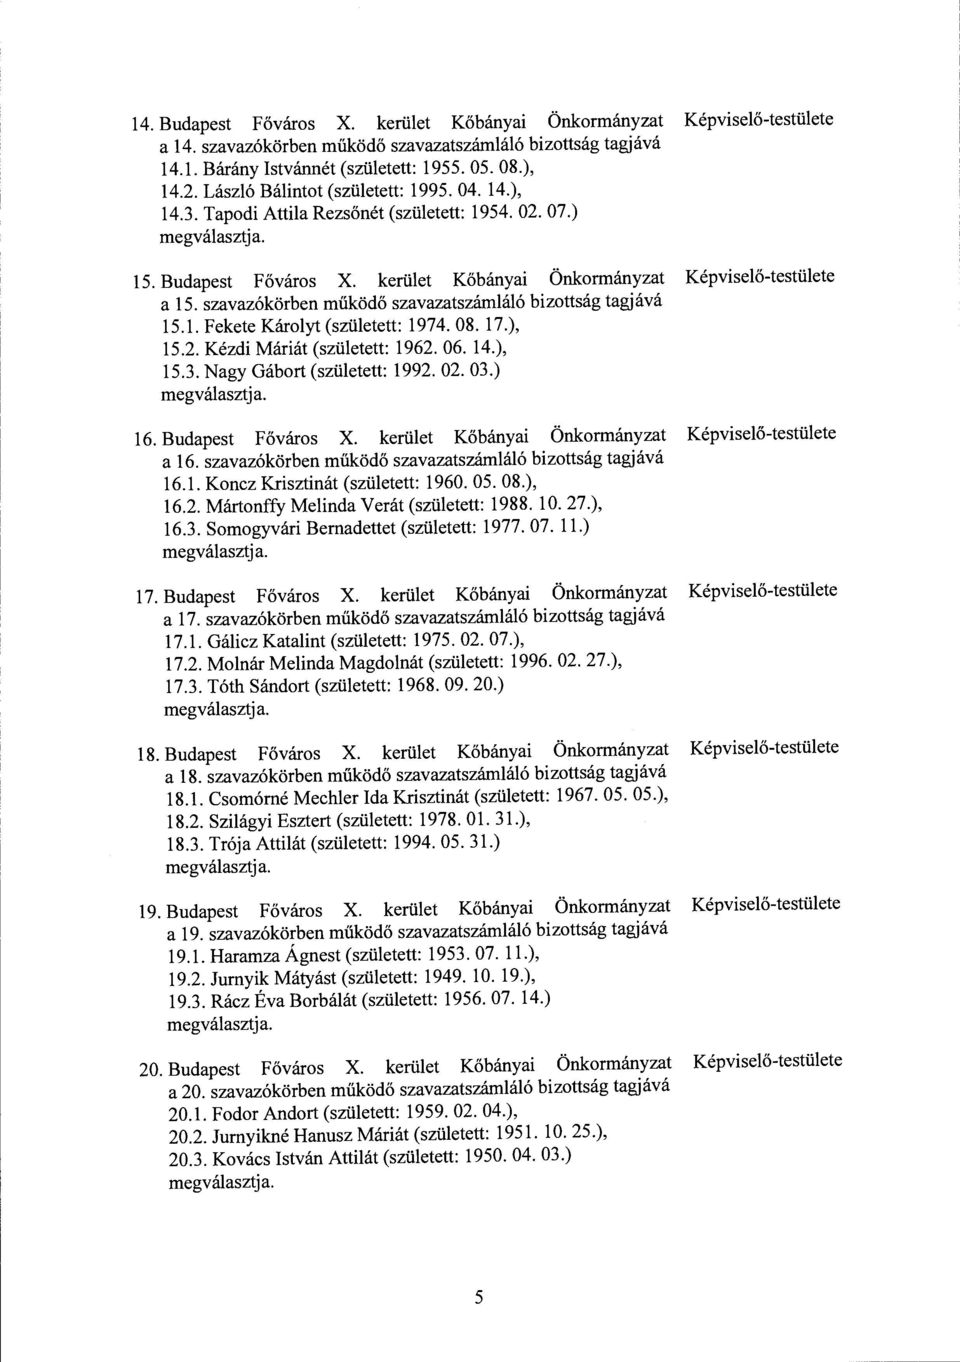 szavazókörben működő szavazatszámláló bizottság tagjává 15.1. Fekete Károlyt (született: 1974.08. 17.), 15.2. Kézdi Máriát (született: 1962. 06. 14.), 15.3. Nagy Gábort (született: 1992. 02. 03.) 16.